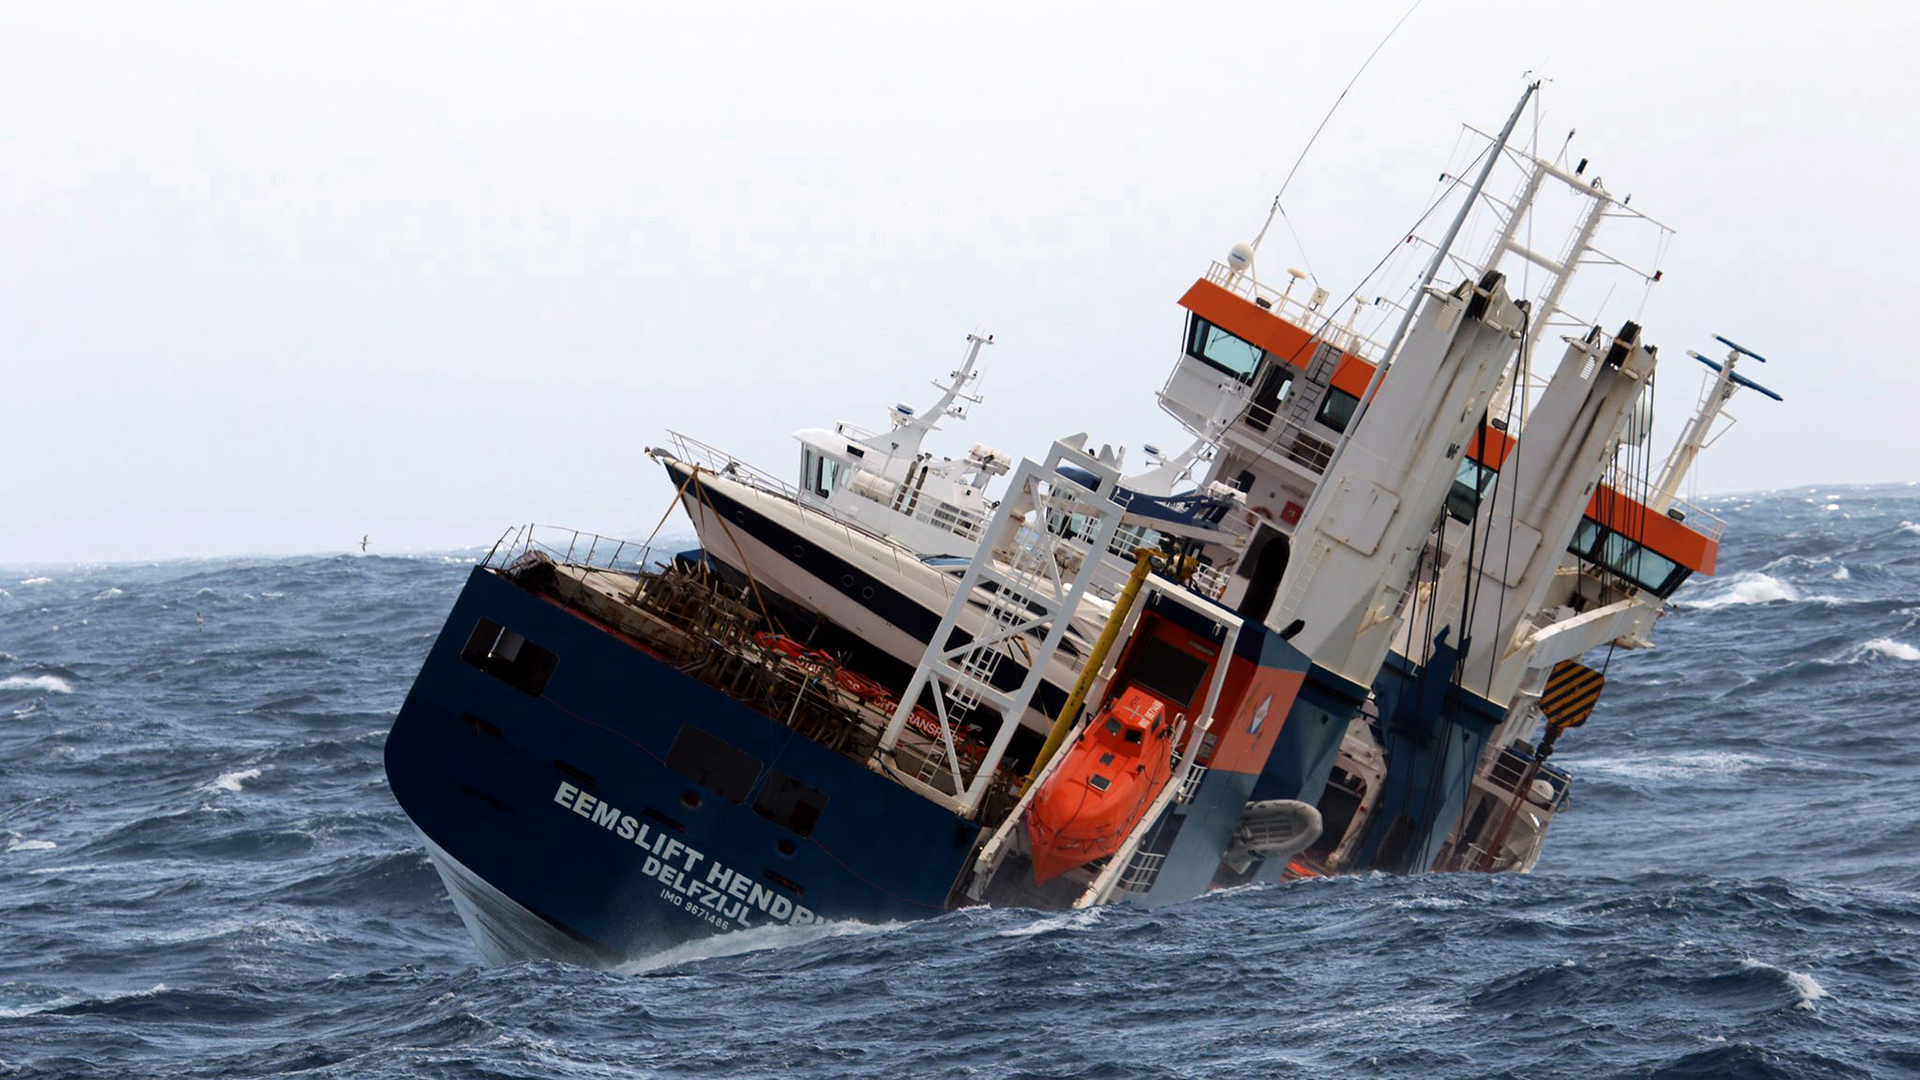 Das niederländische Frachtschiff "Eemslift Hendrika", das in der norwegischen See treibt. | EPA